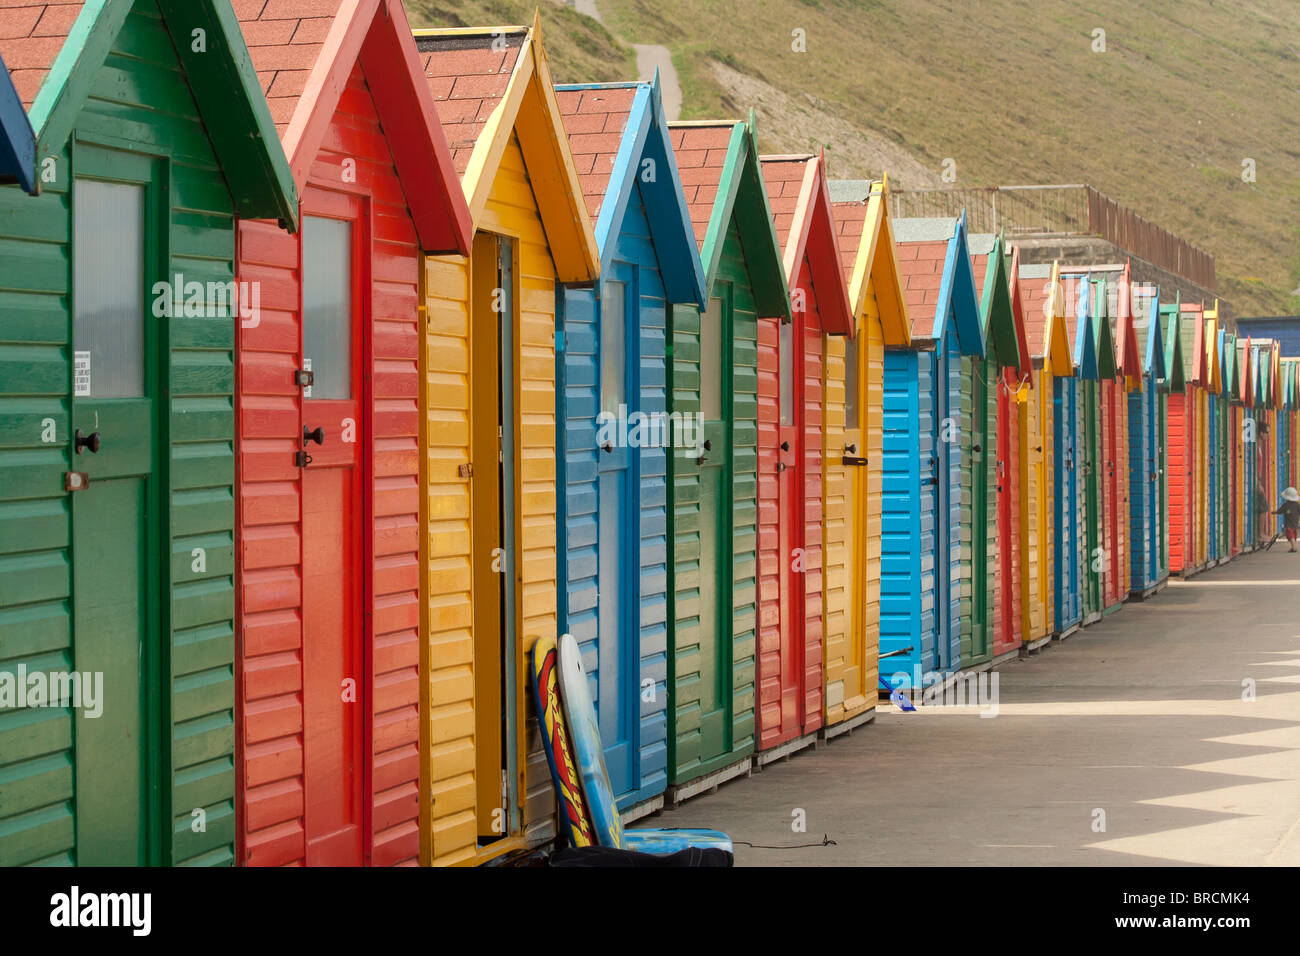 Fila de brillantes colores típicamente británico de cabañas de playa en inglés Seaside Resort. Foto de stock